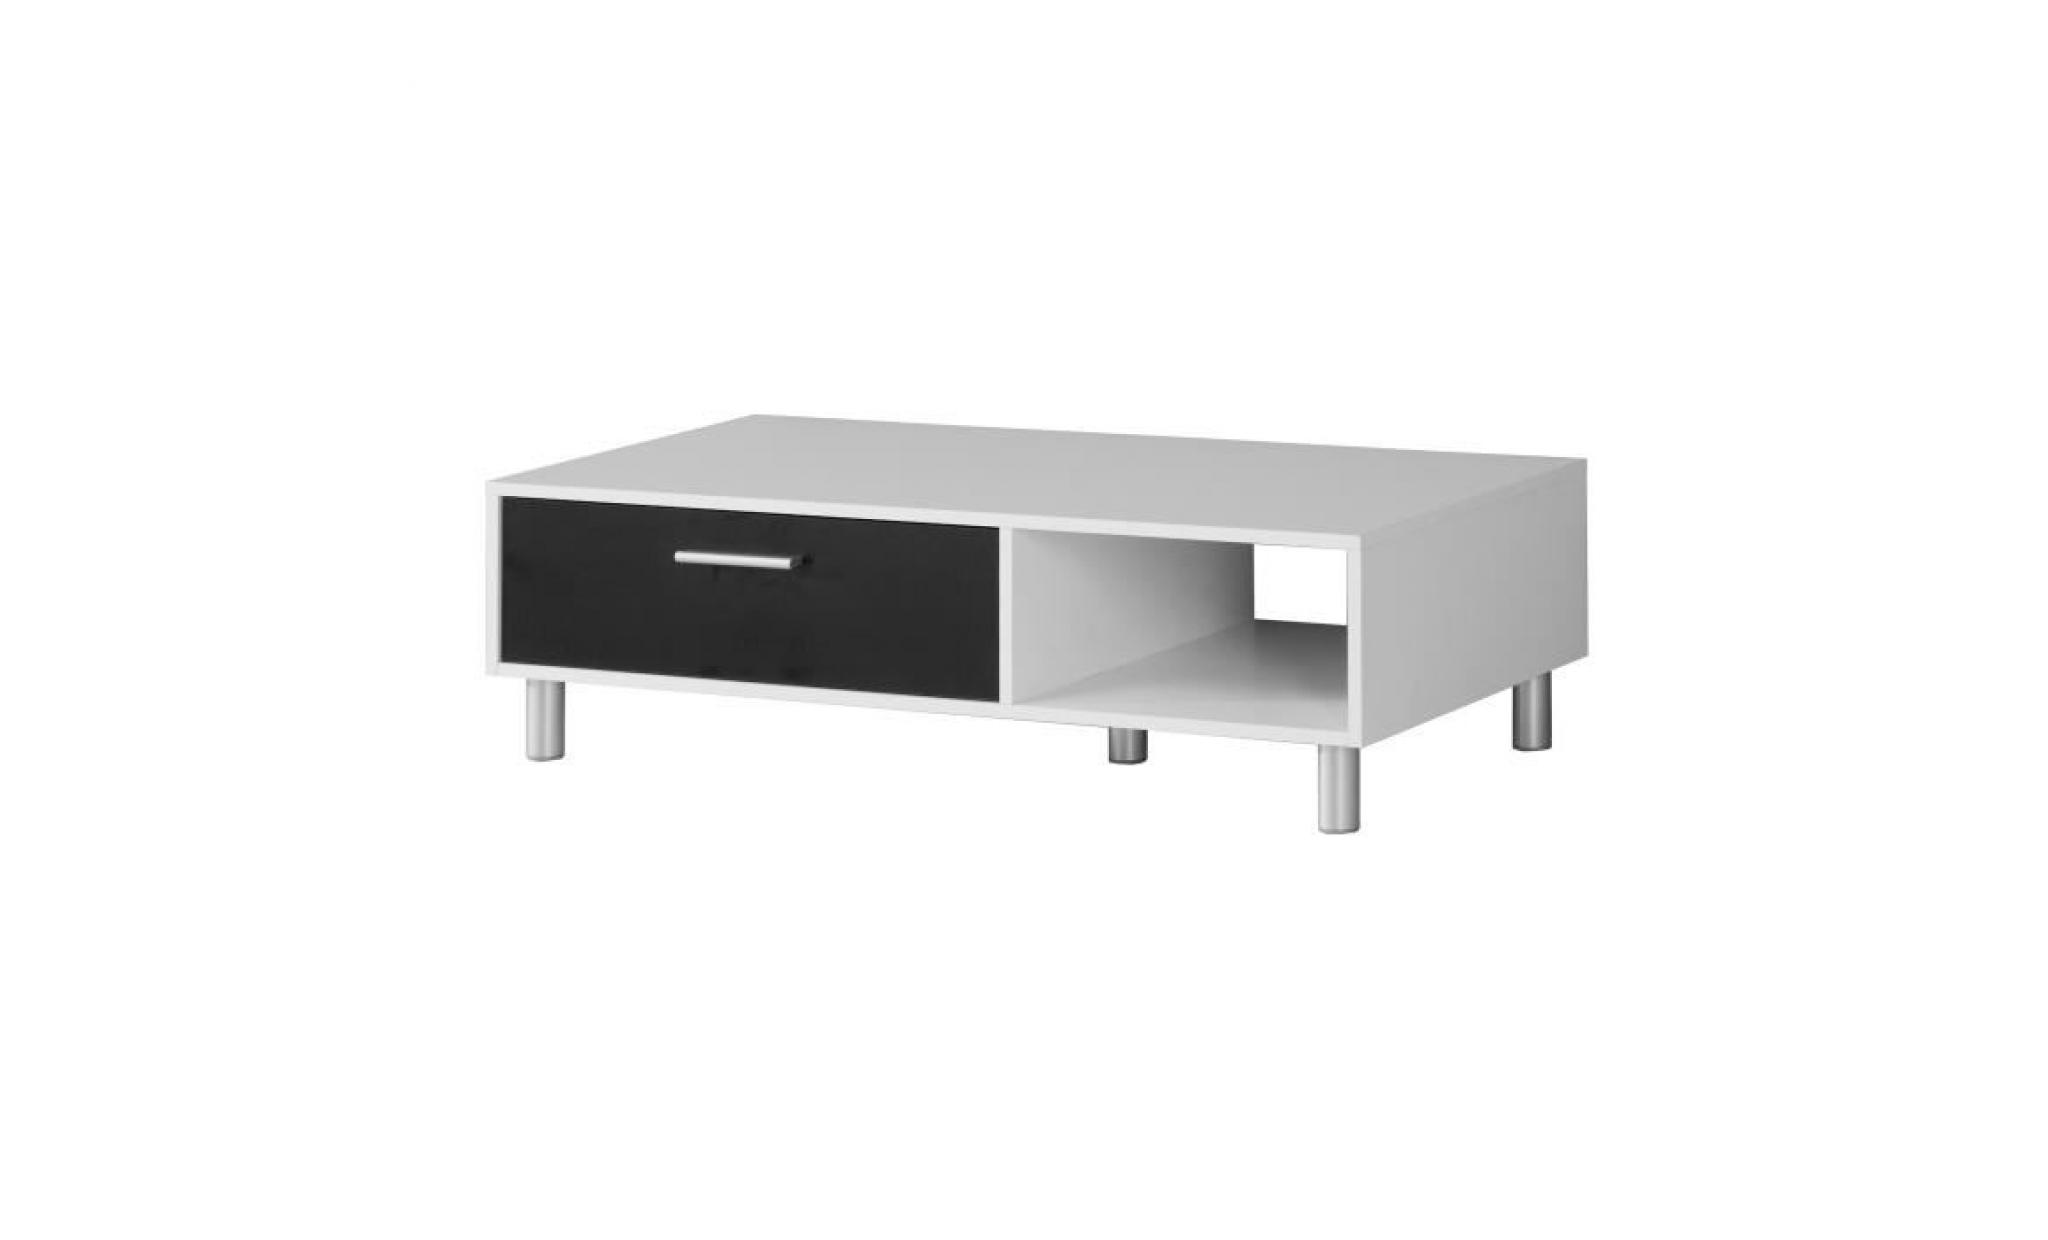 finlandek table basse laboca   contemporain   décor blanc mat et noir   l 109,7 x l 52,1 cm pas cher